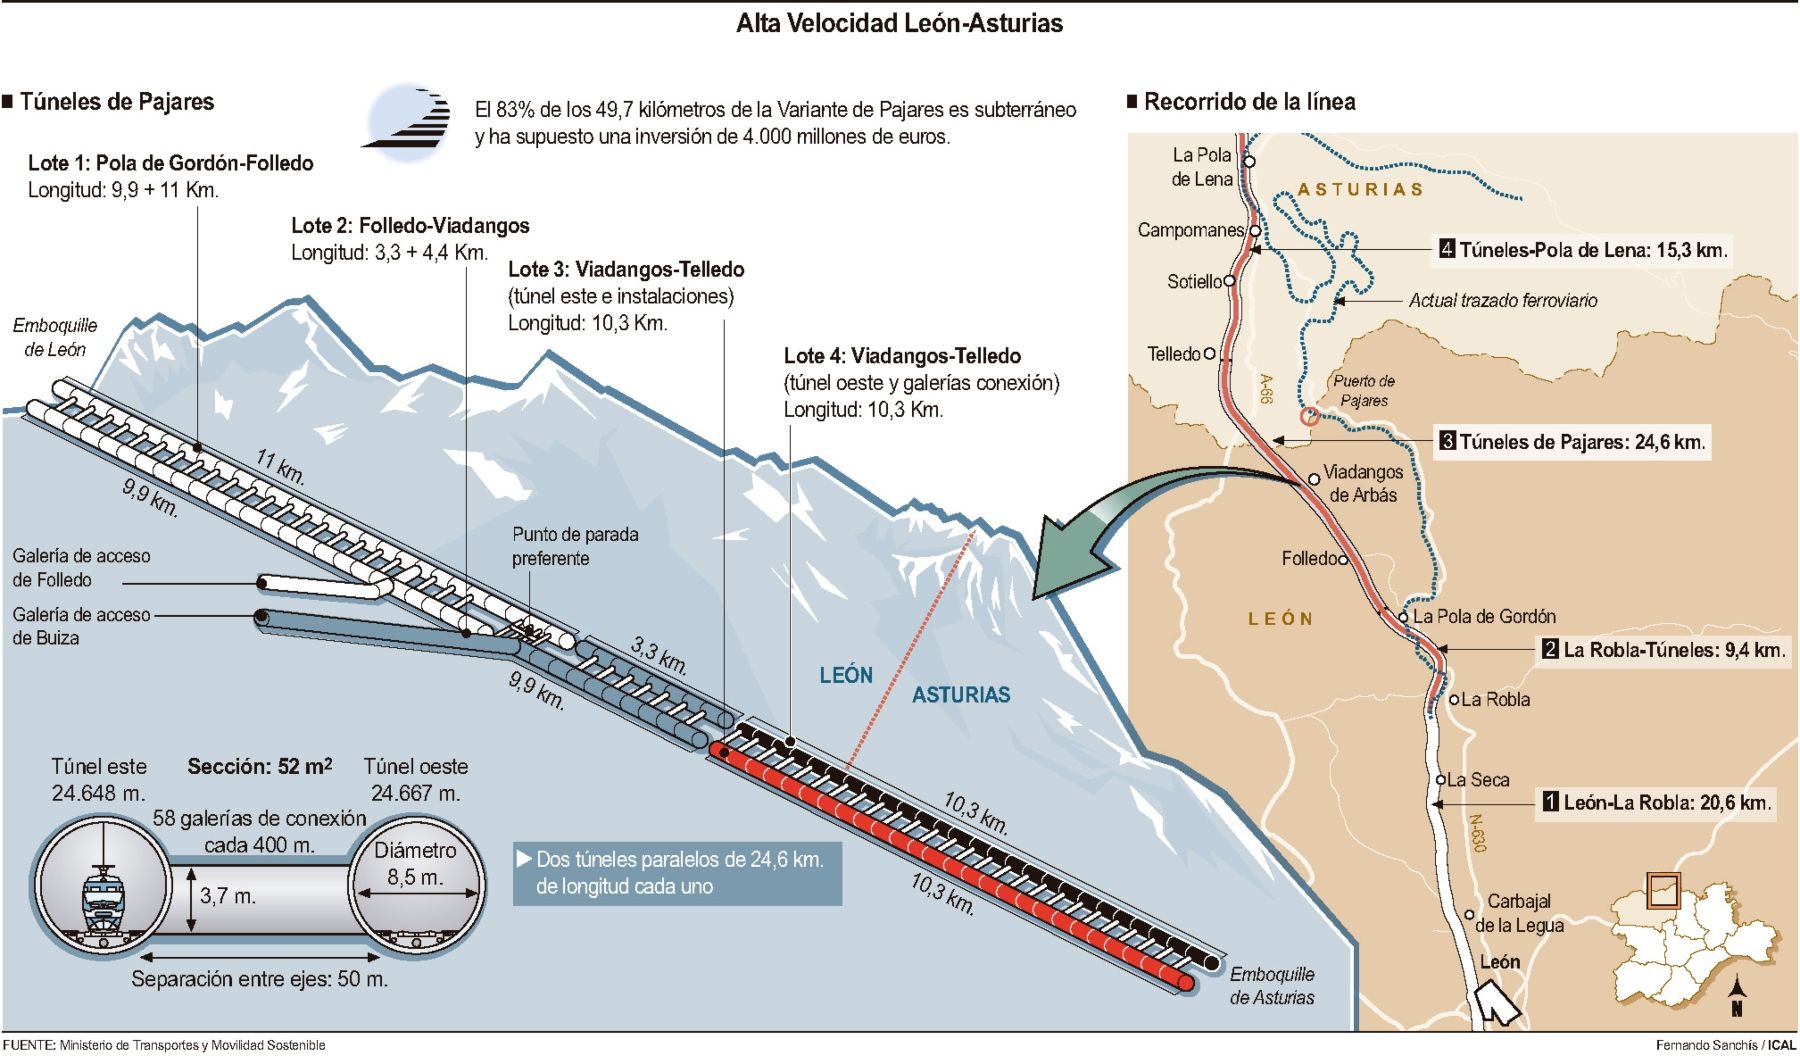 La Cordillera Cantábrica se abre al paso de los trenes de alta velocidad: nueva Variante de Pajares